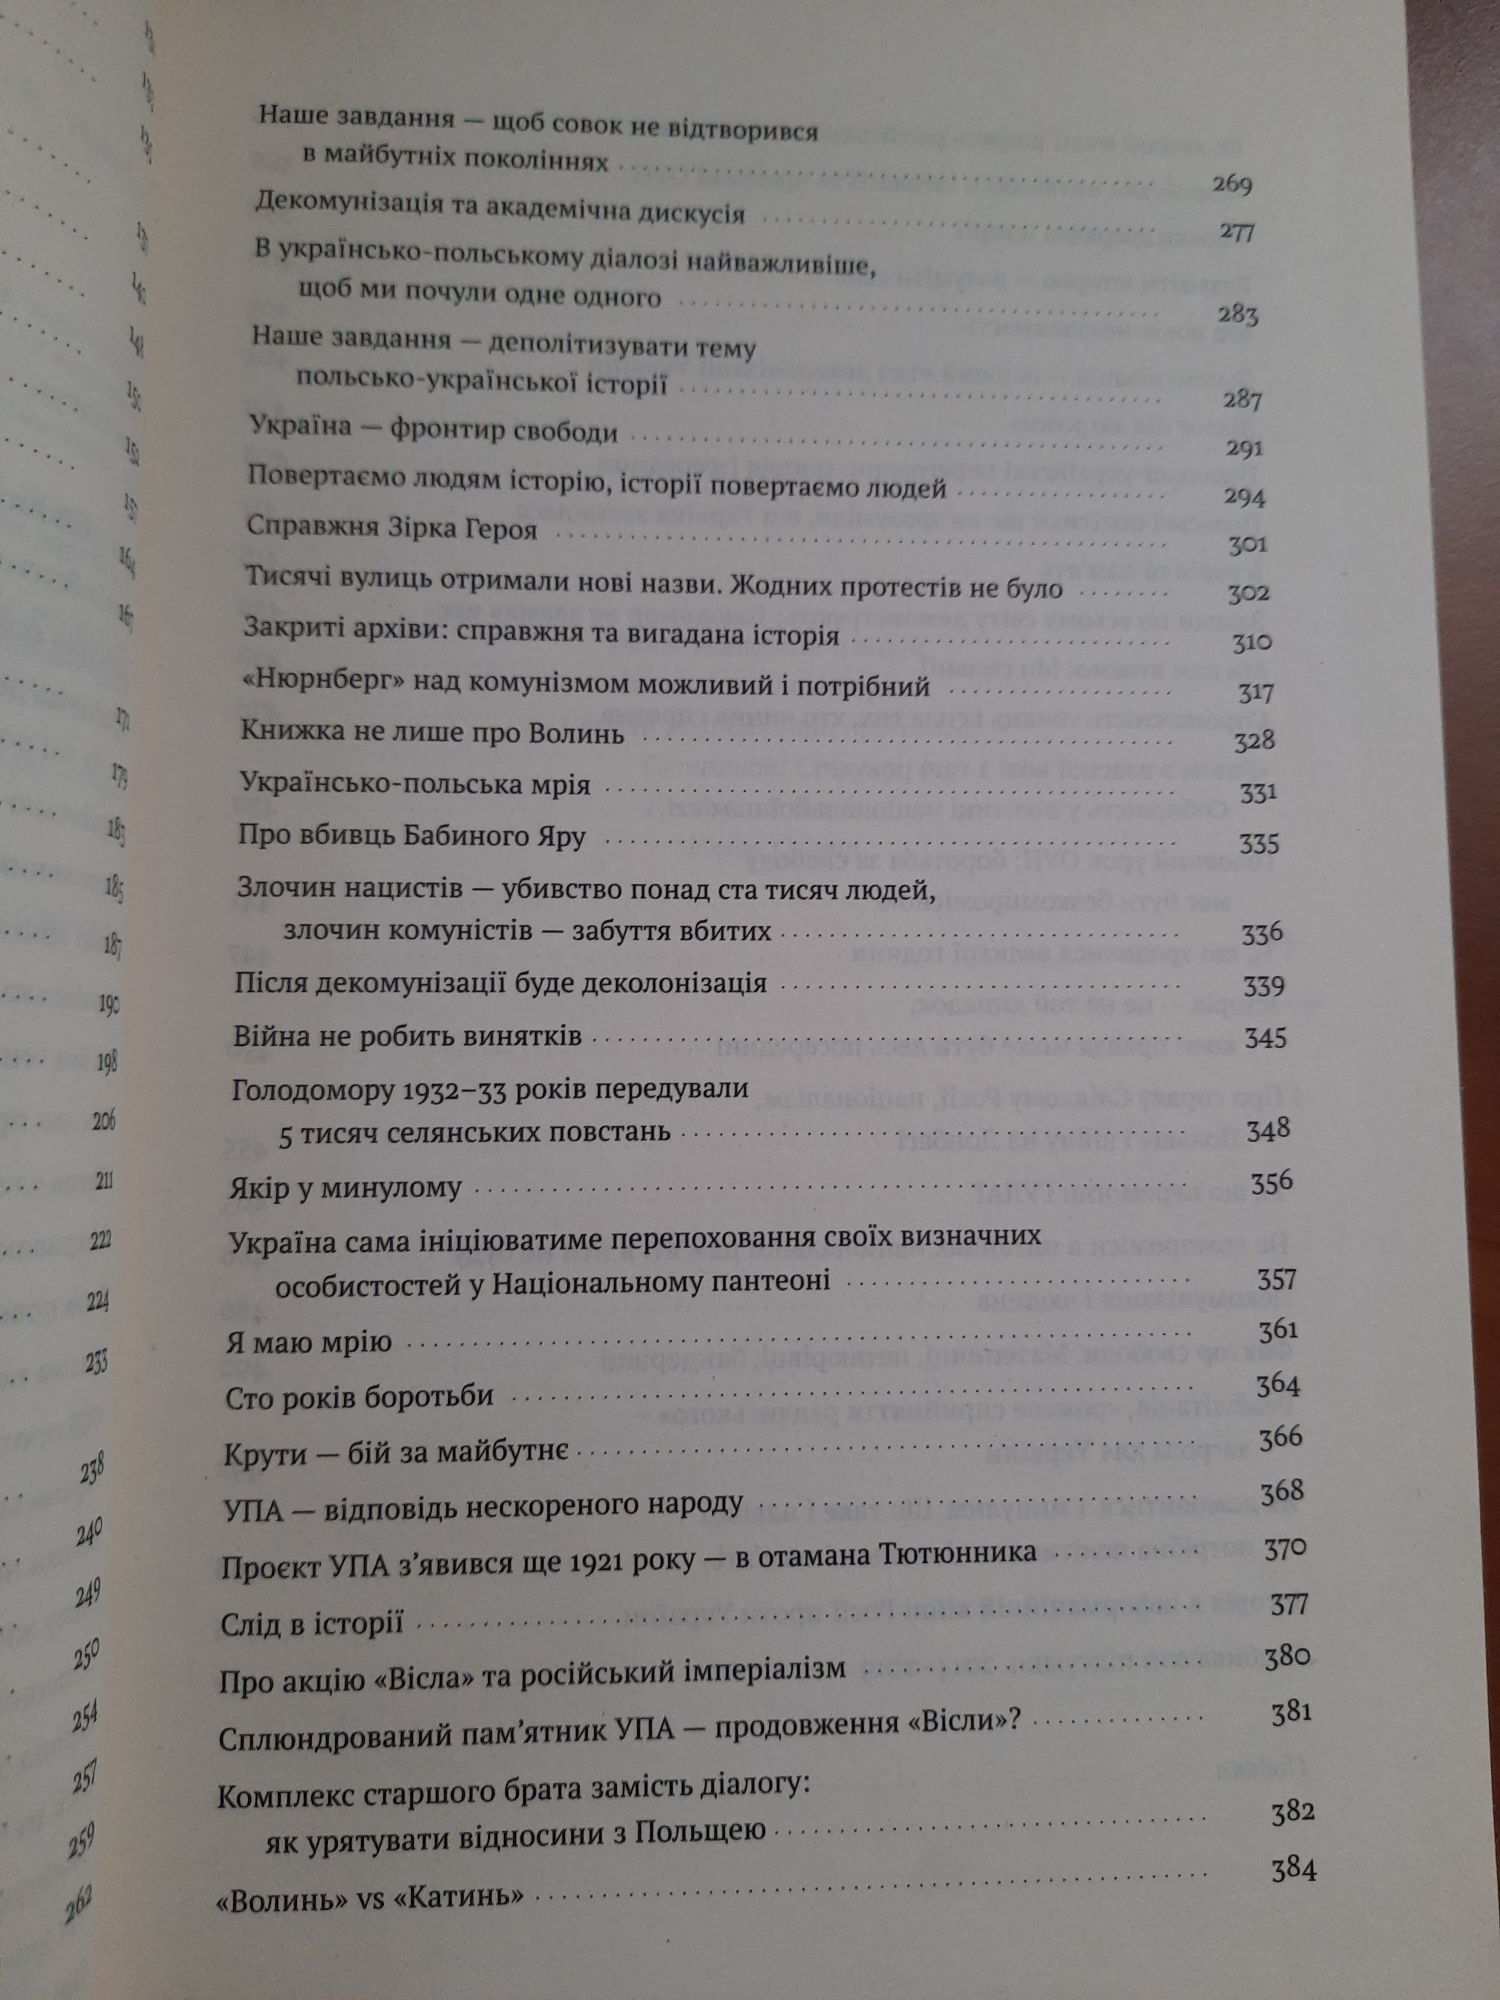 Нотатки з кухні переписування історії В'ятрович